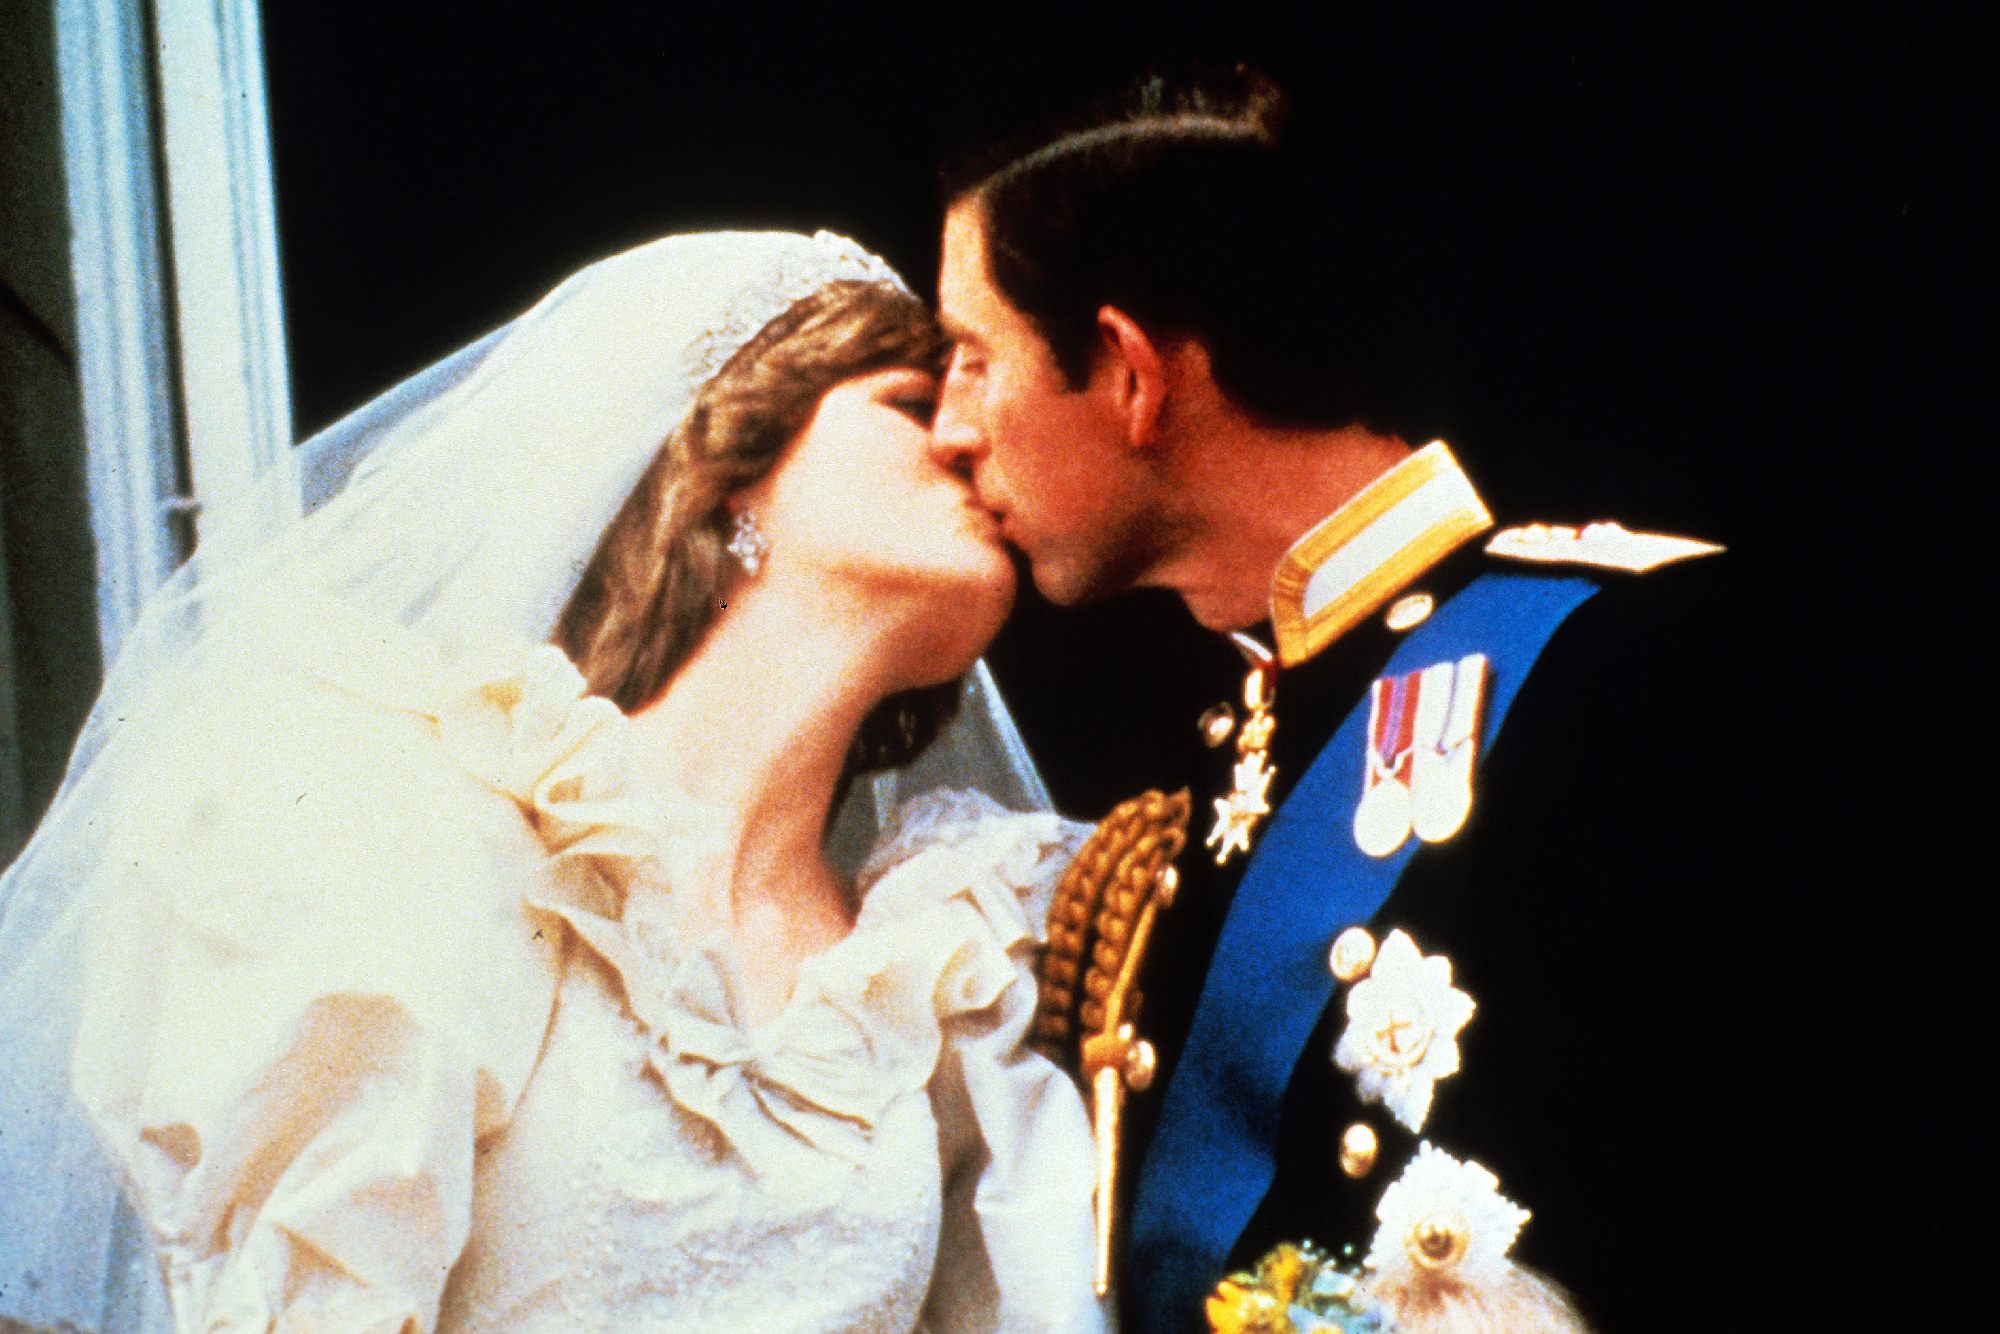 Ritkán látott fotók és videó Diana és Károly esküvőjéről